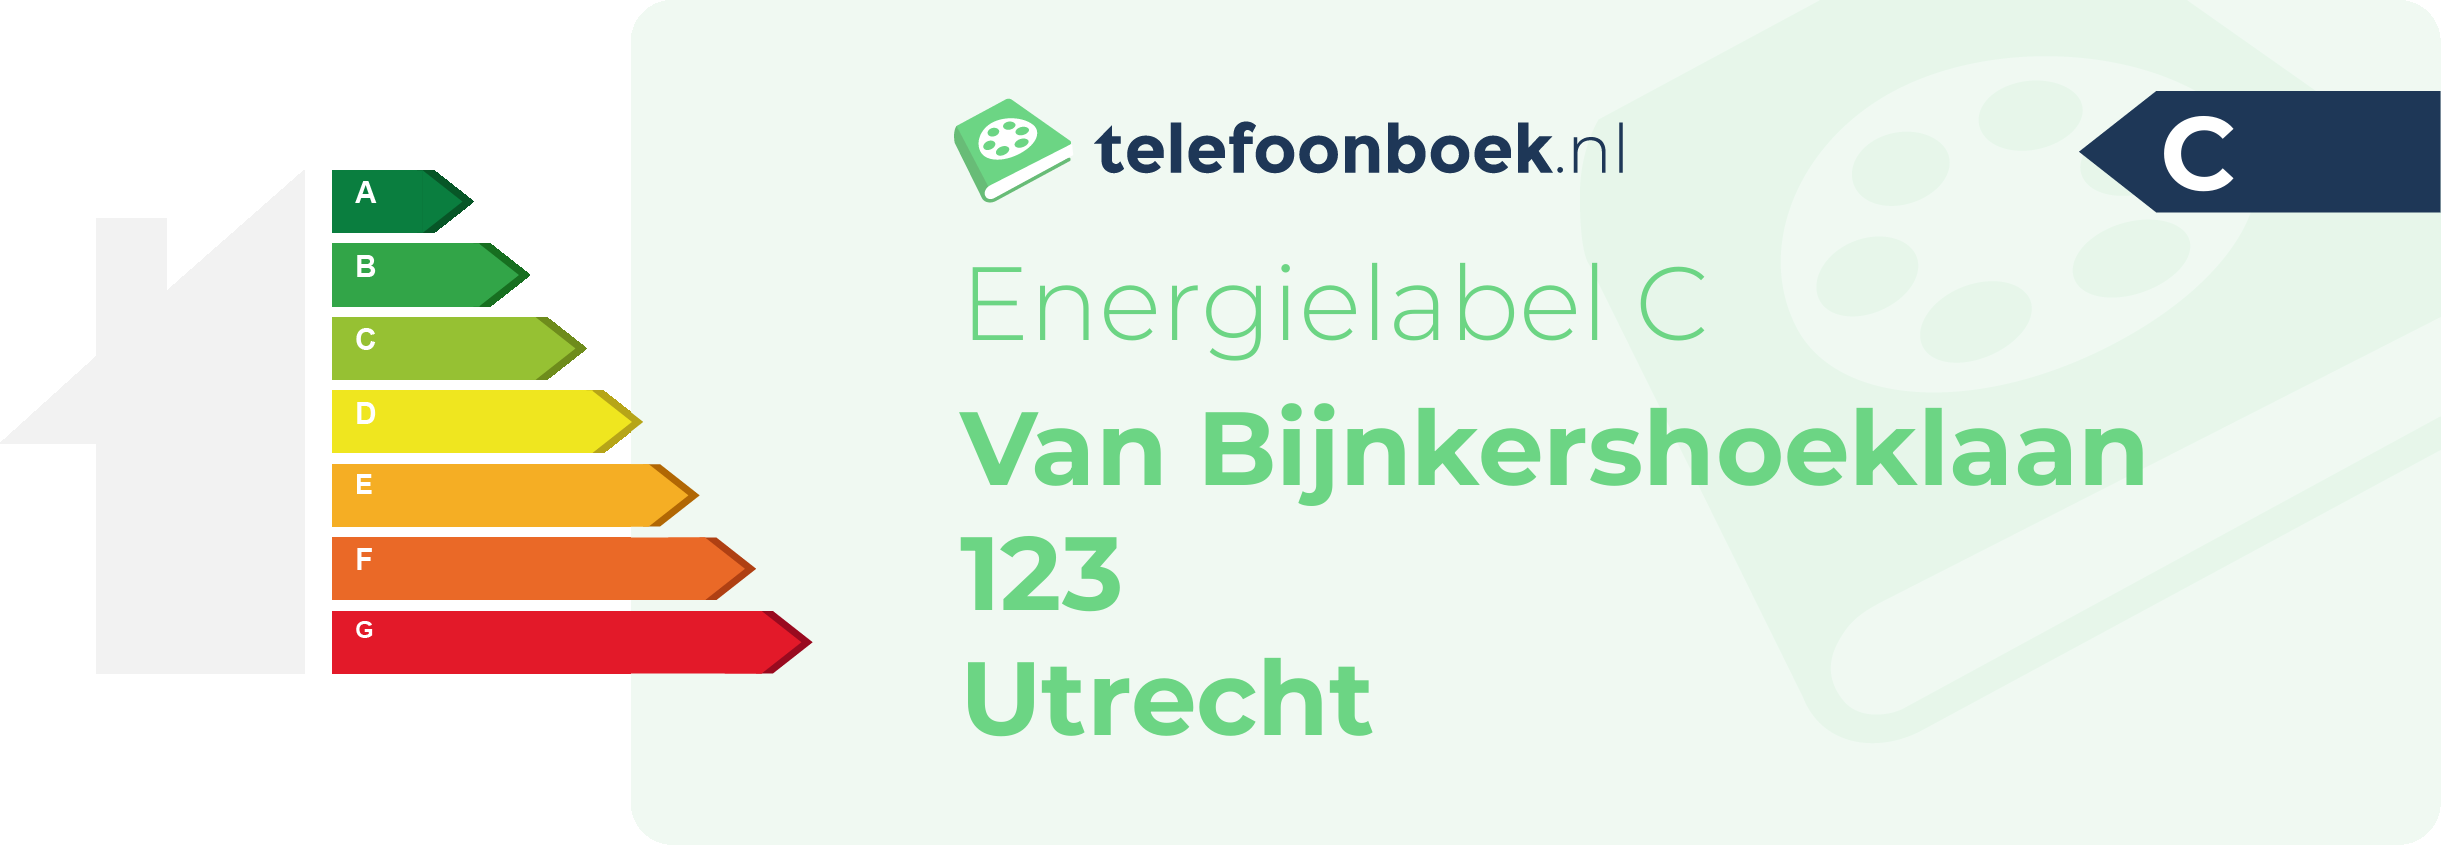 Energielabel Van Bijnkershoeklaan 123 Utrecht